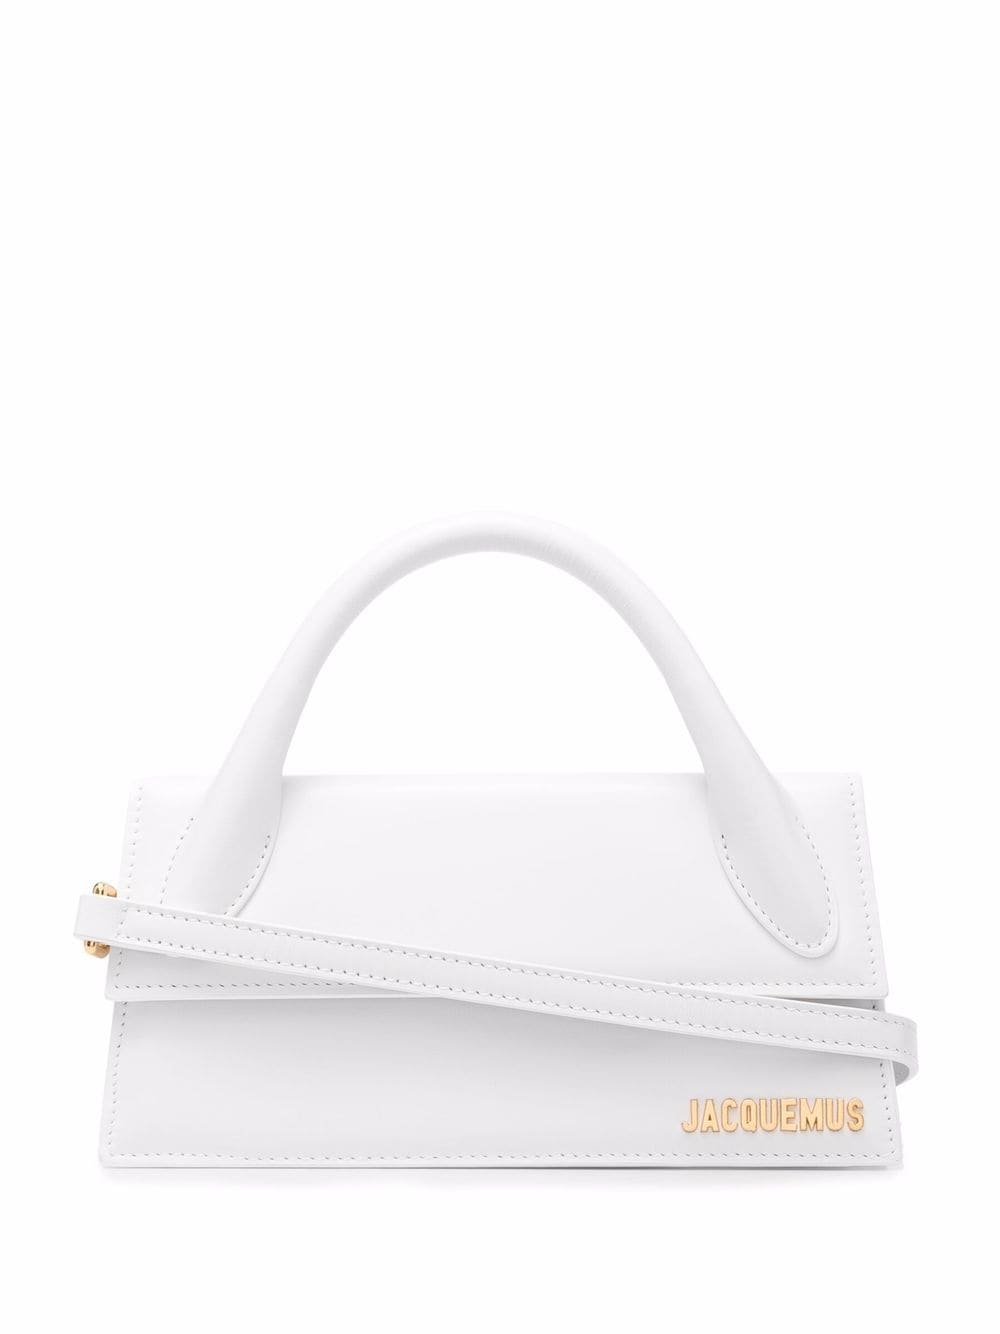 White Leather Long Tote Handbag for Women